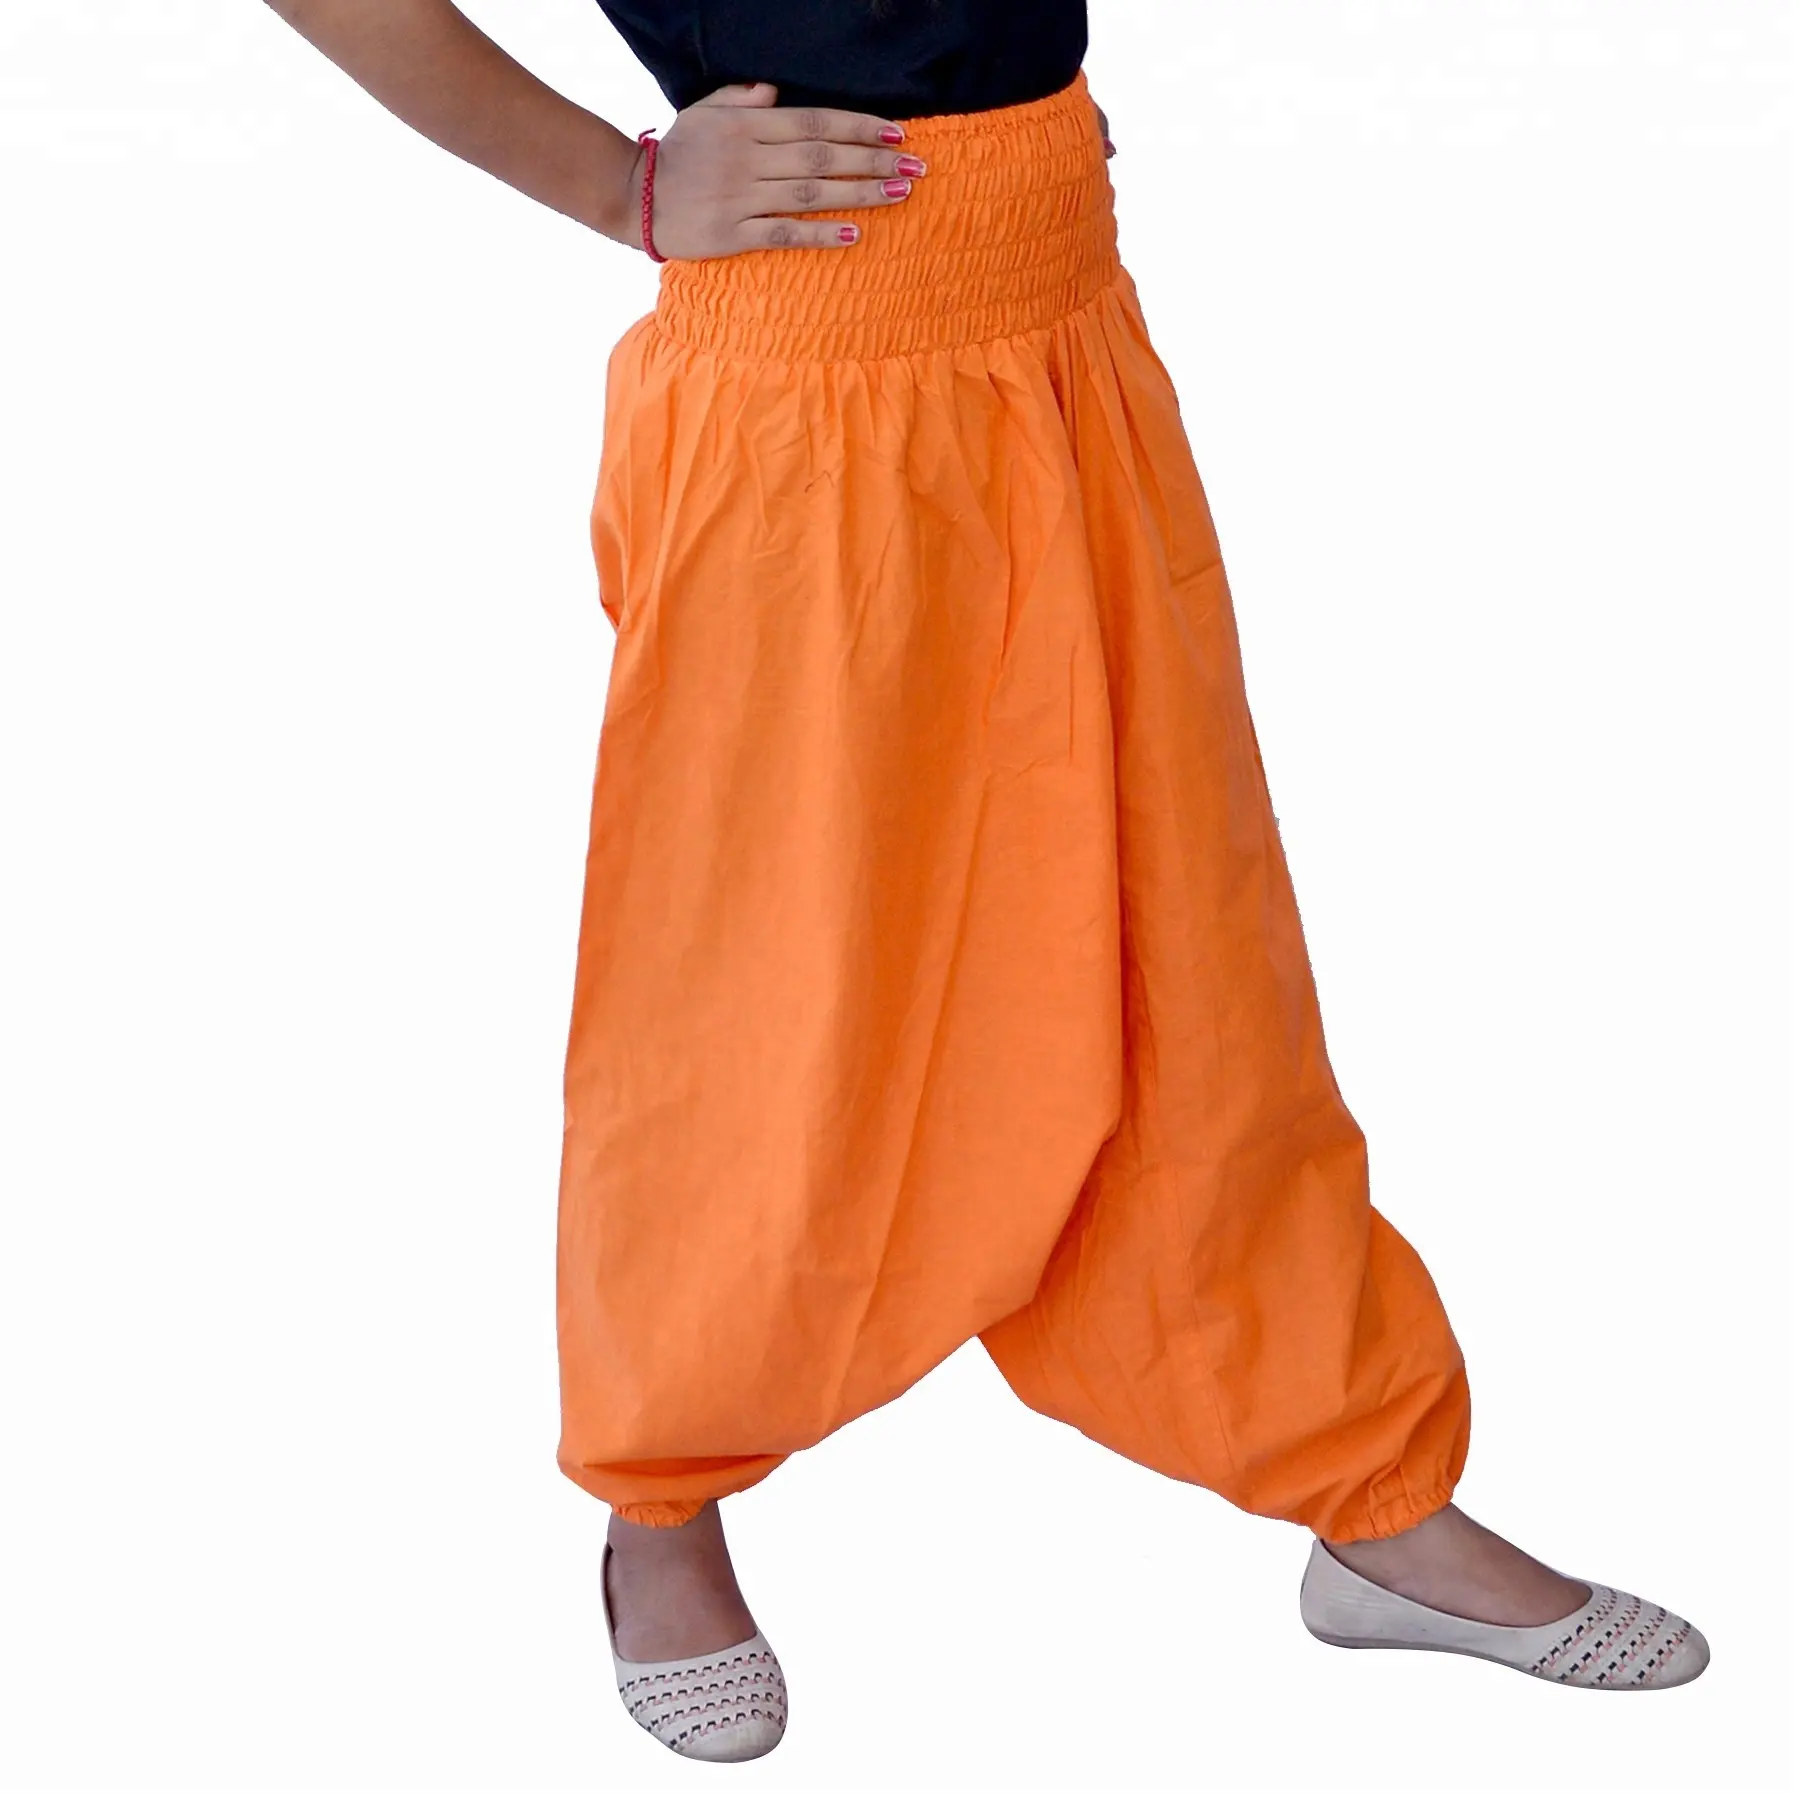 Vendita calda indiano fatto a mano pantaloni Harem in cotone elastico in vita pantaloni da Jogging donna stile Hip Hop arancione Yoga pantaloni all'ingrosso